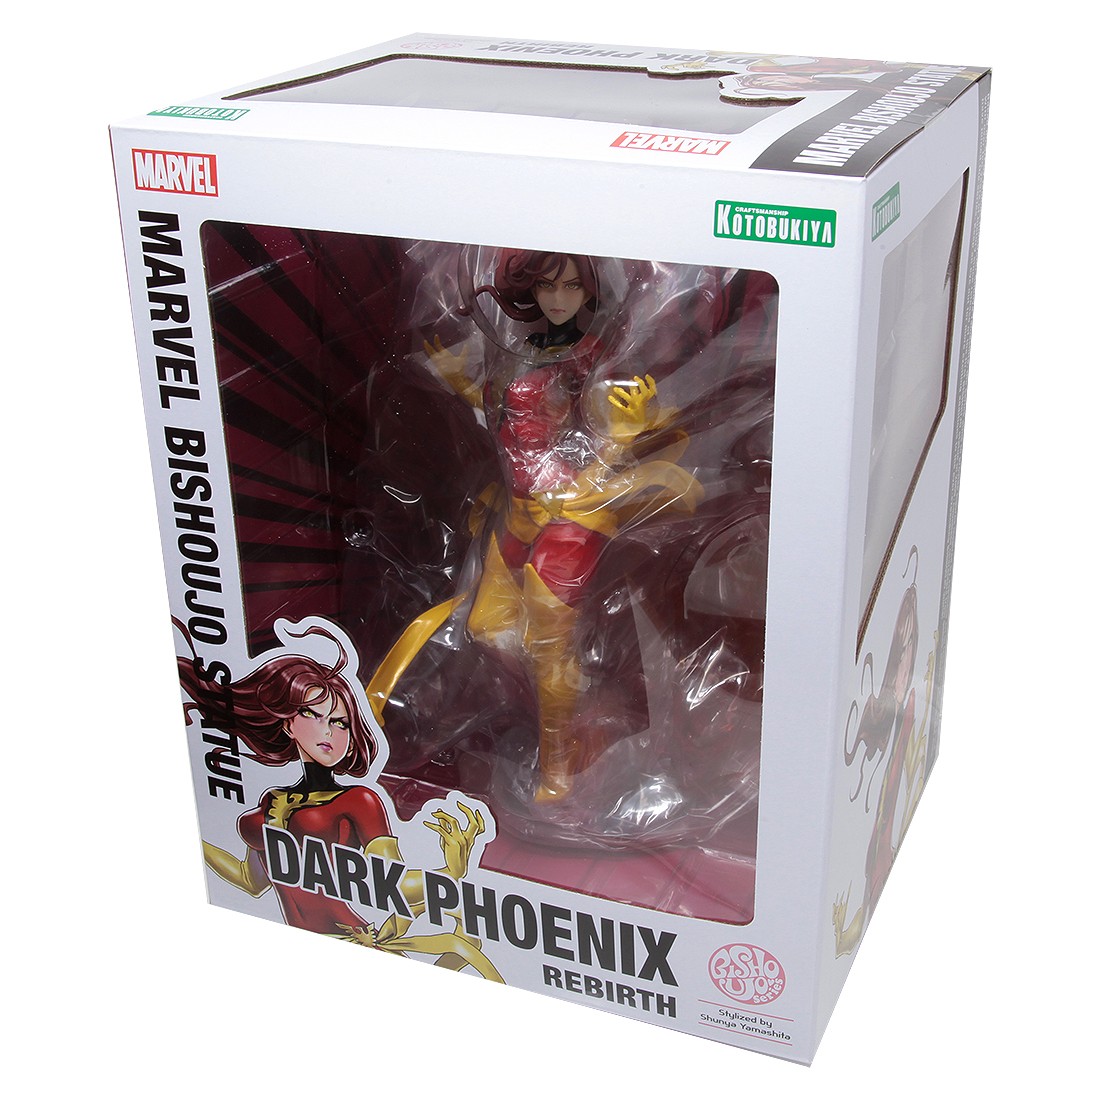 X-Men Marvel Bishoujo Statue Dark Phoenix Rebirth 1/7 Scale Figure New In Box 